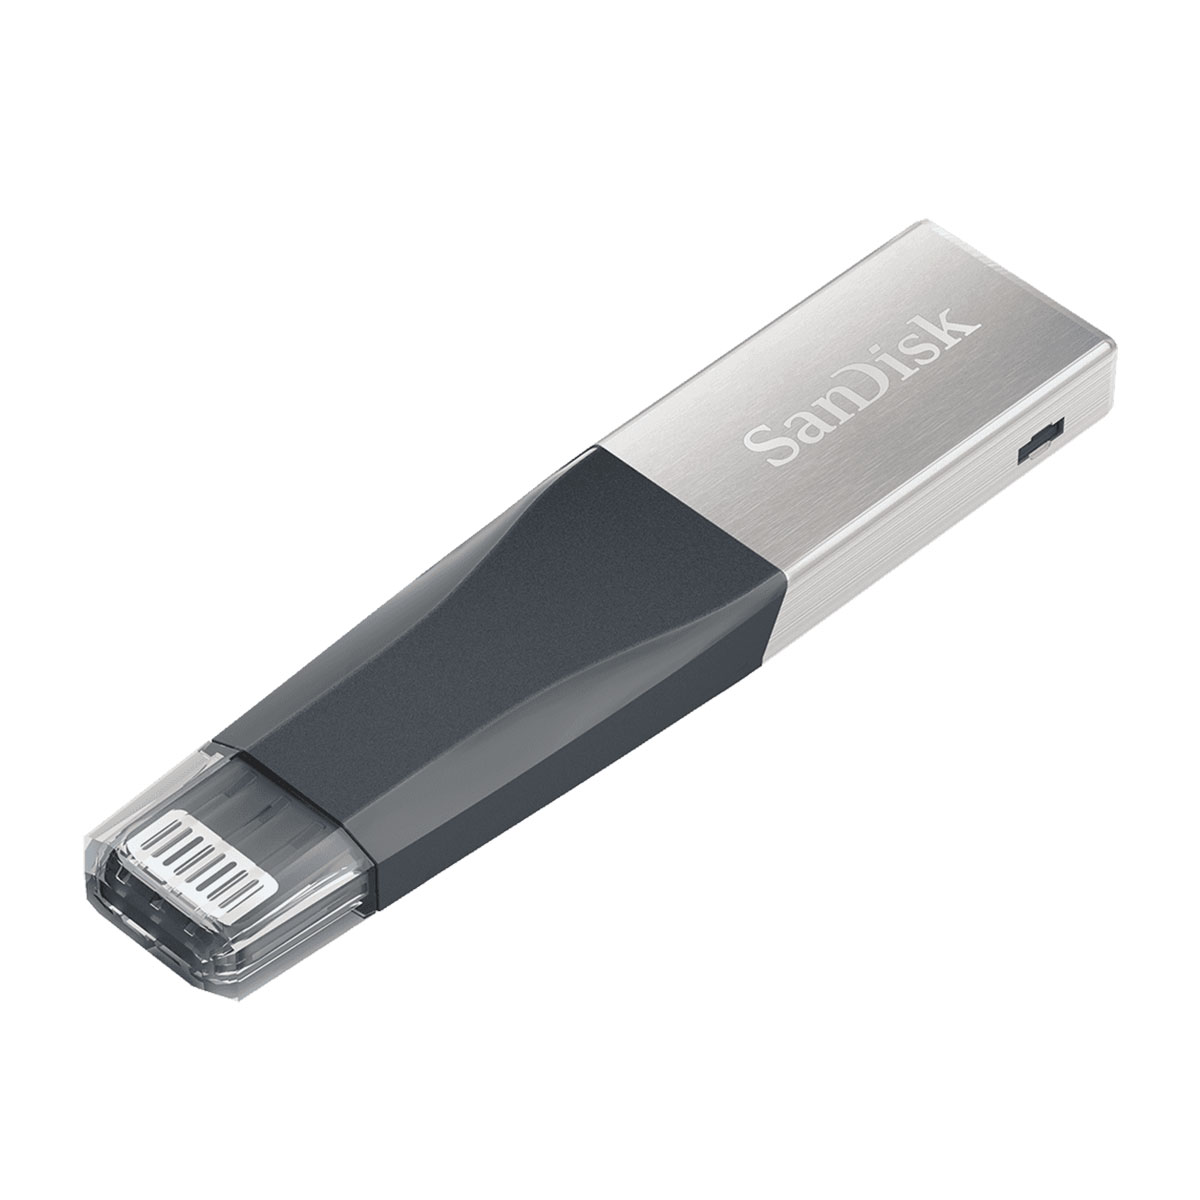 SanDisk - iXpand Mini Flash Drive 16GB